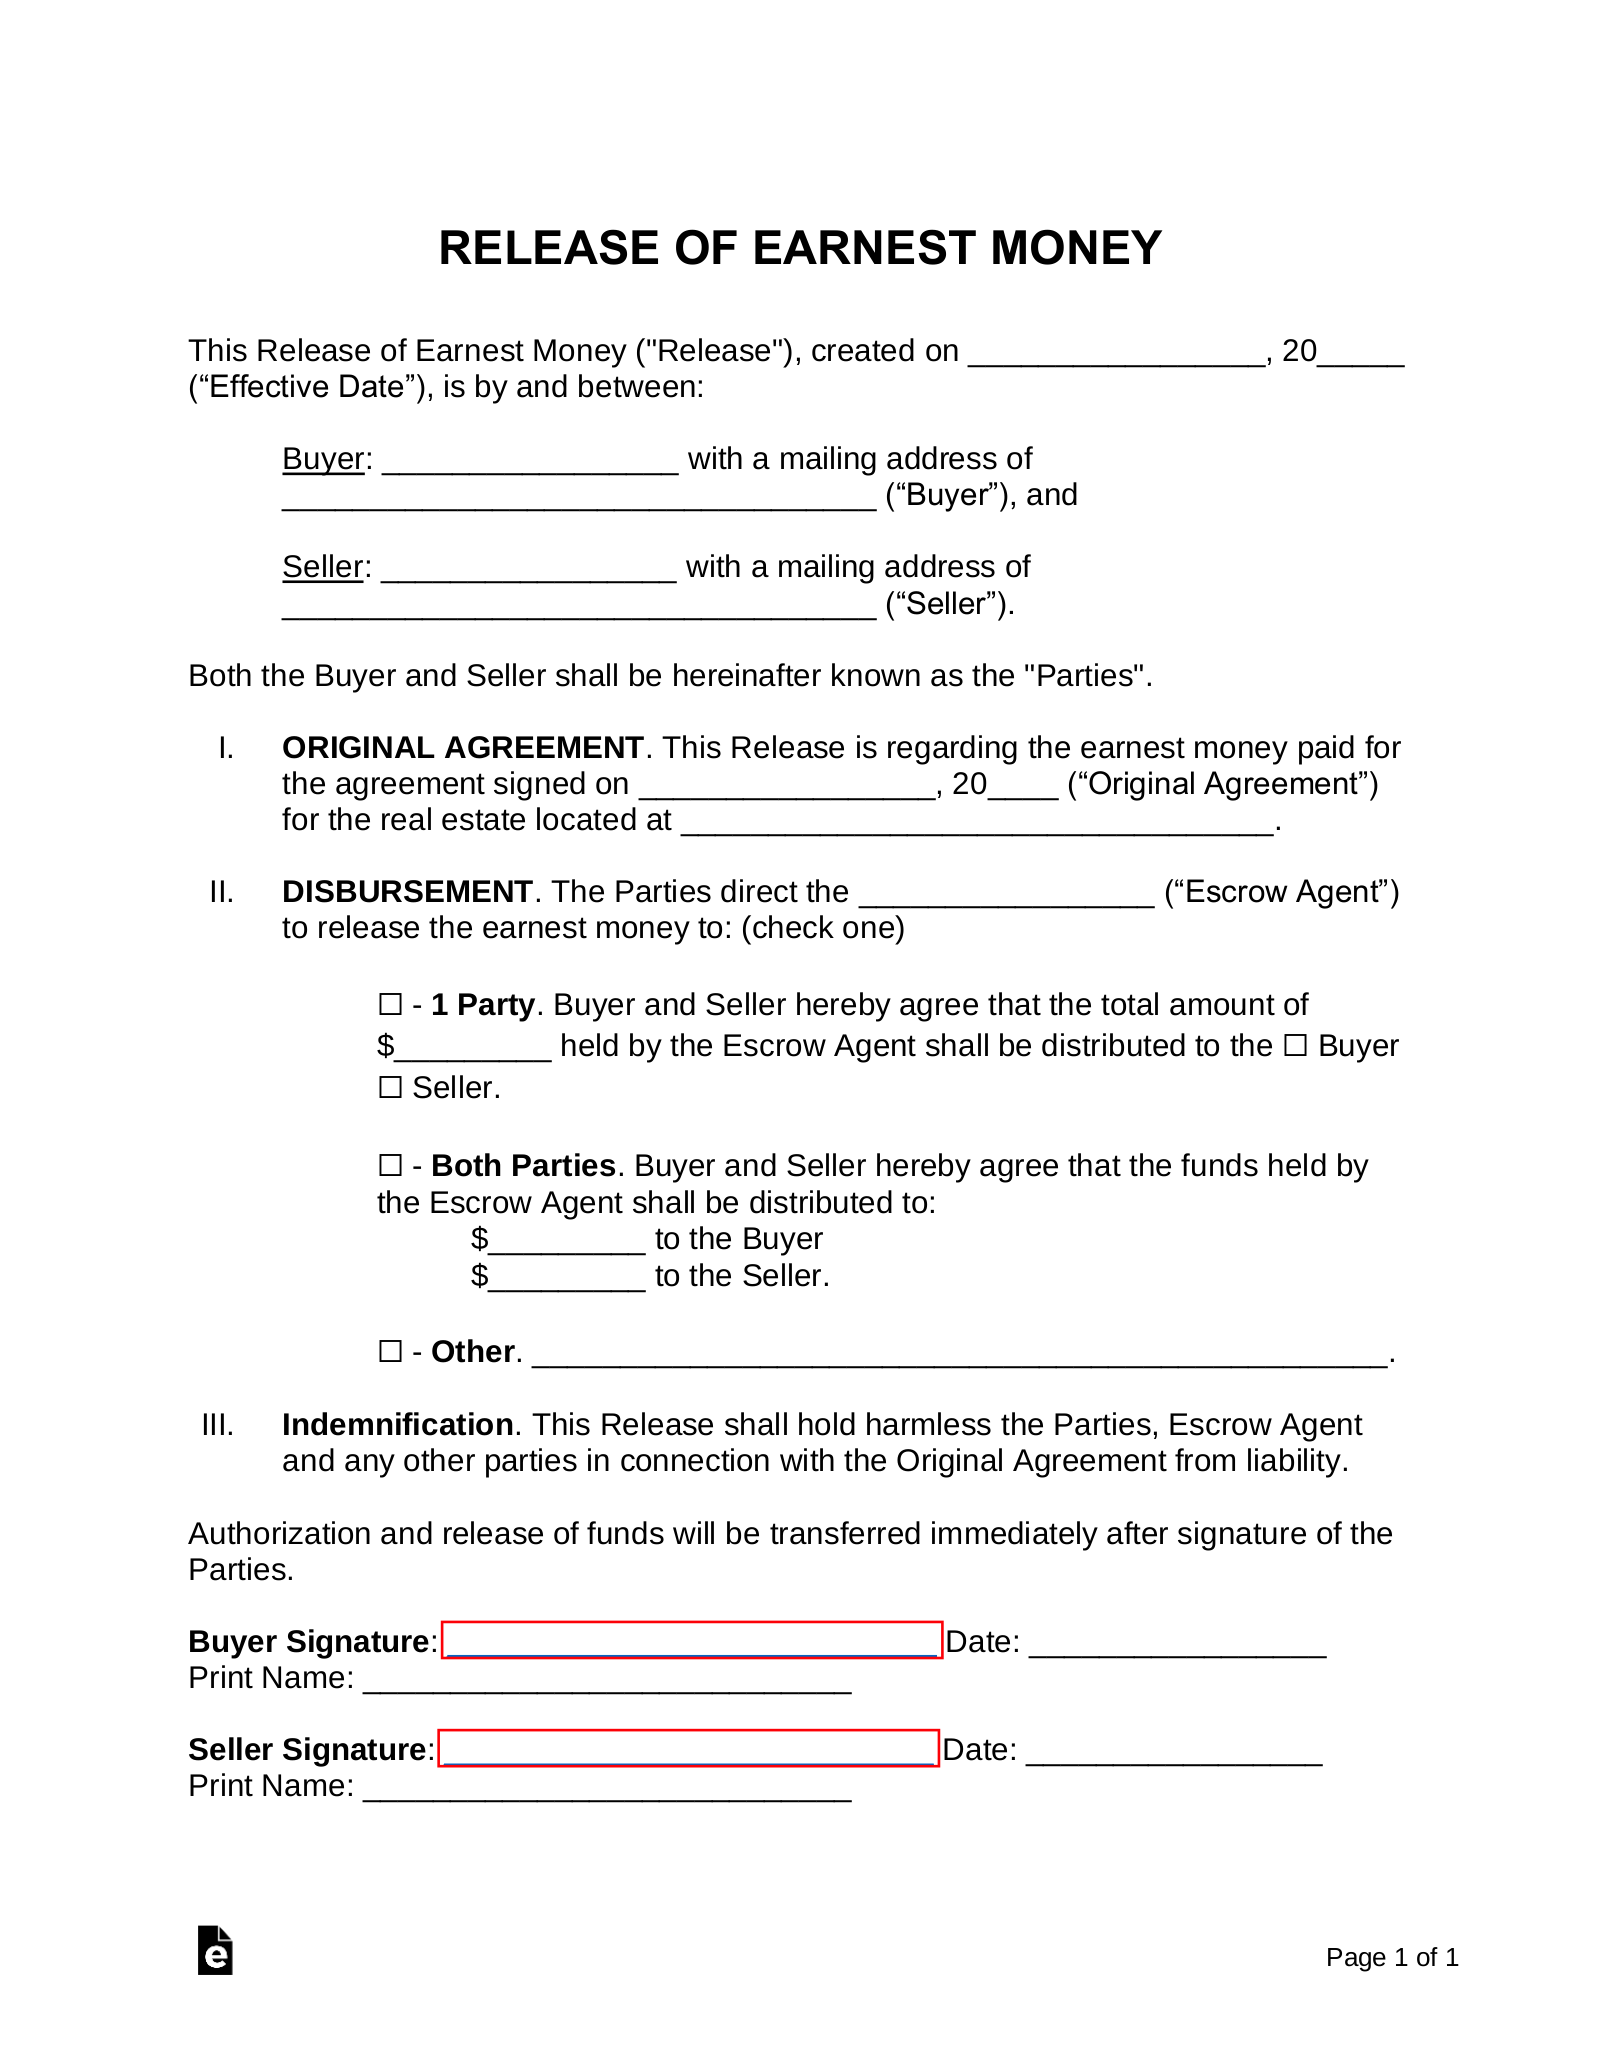 earnest money deposit form
 Free Release of Earnest Money Form - Word | PDF | eForms ...